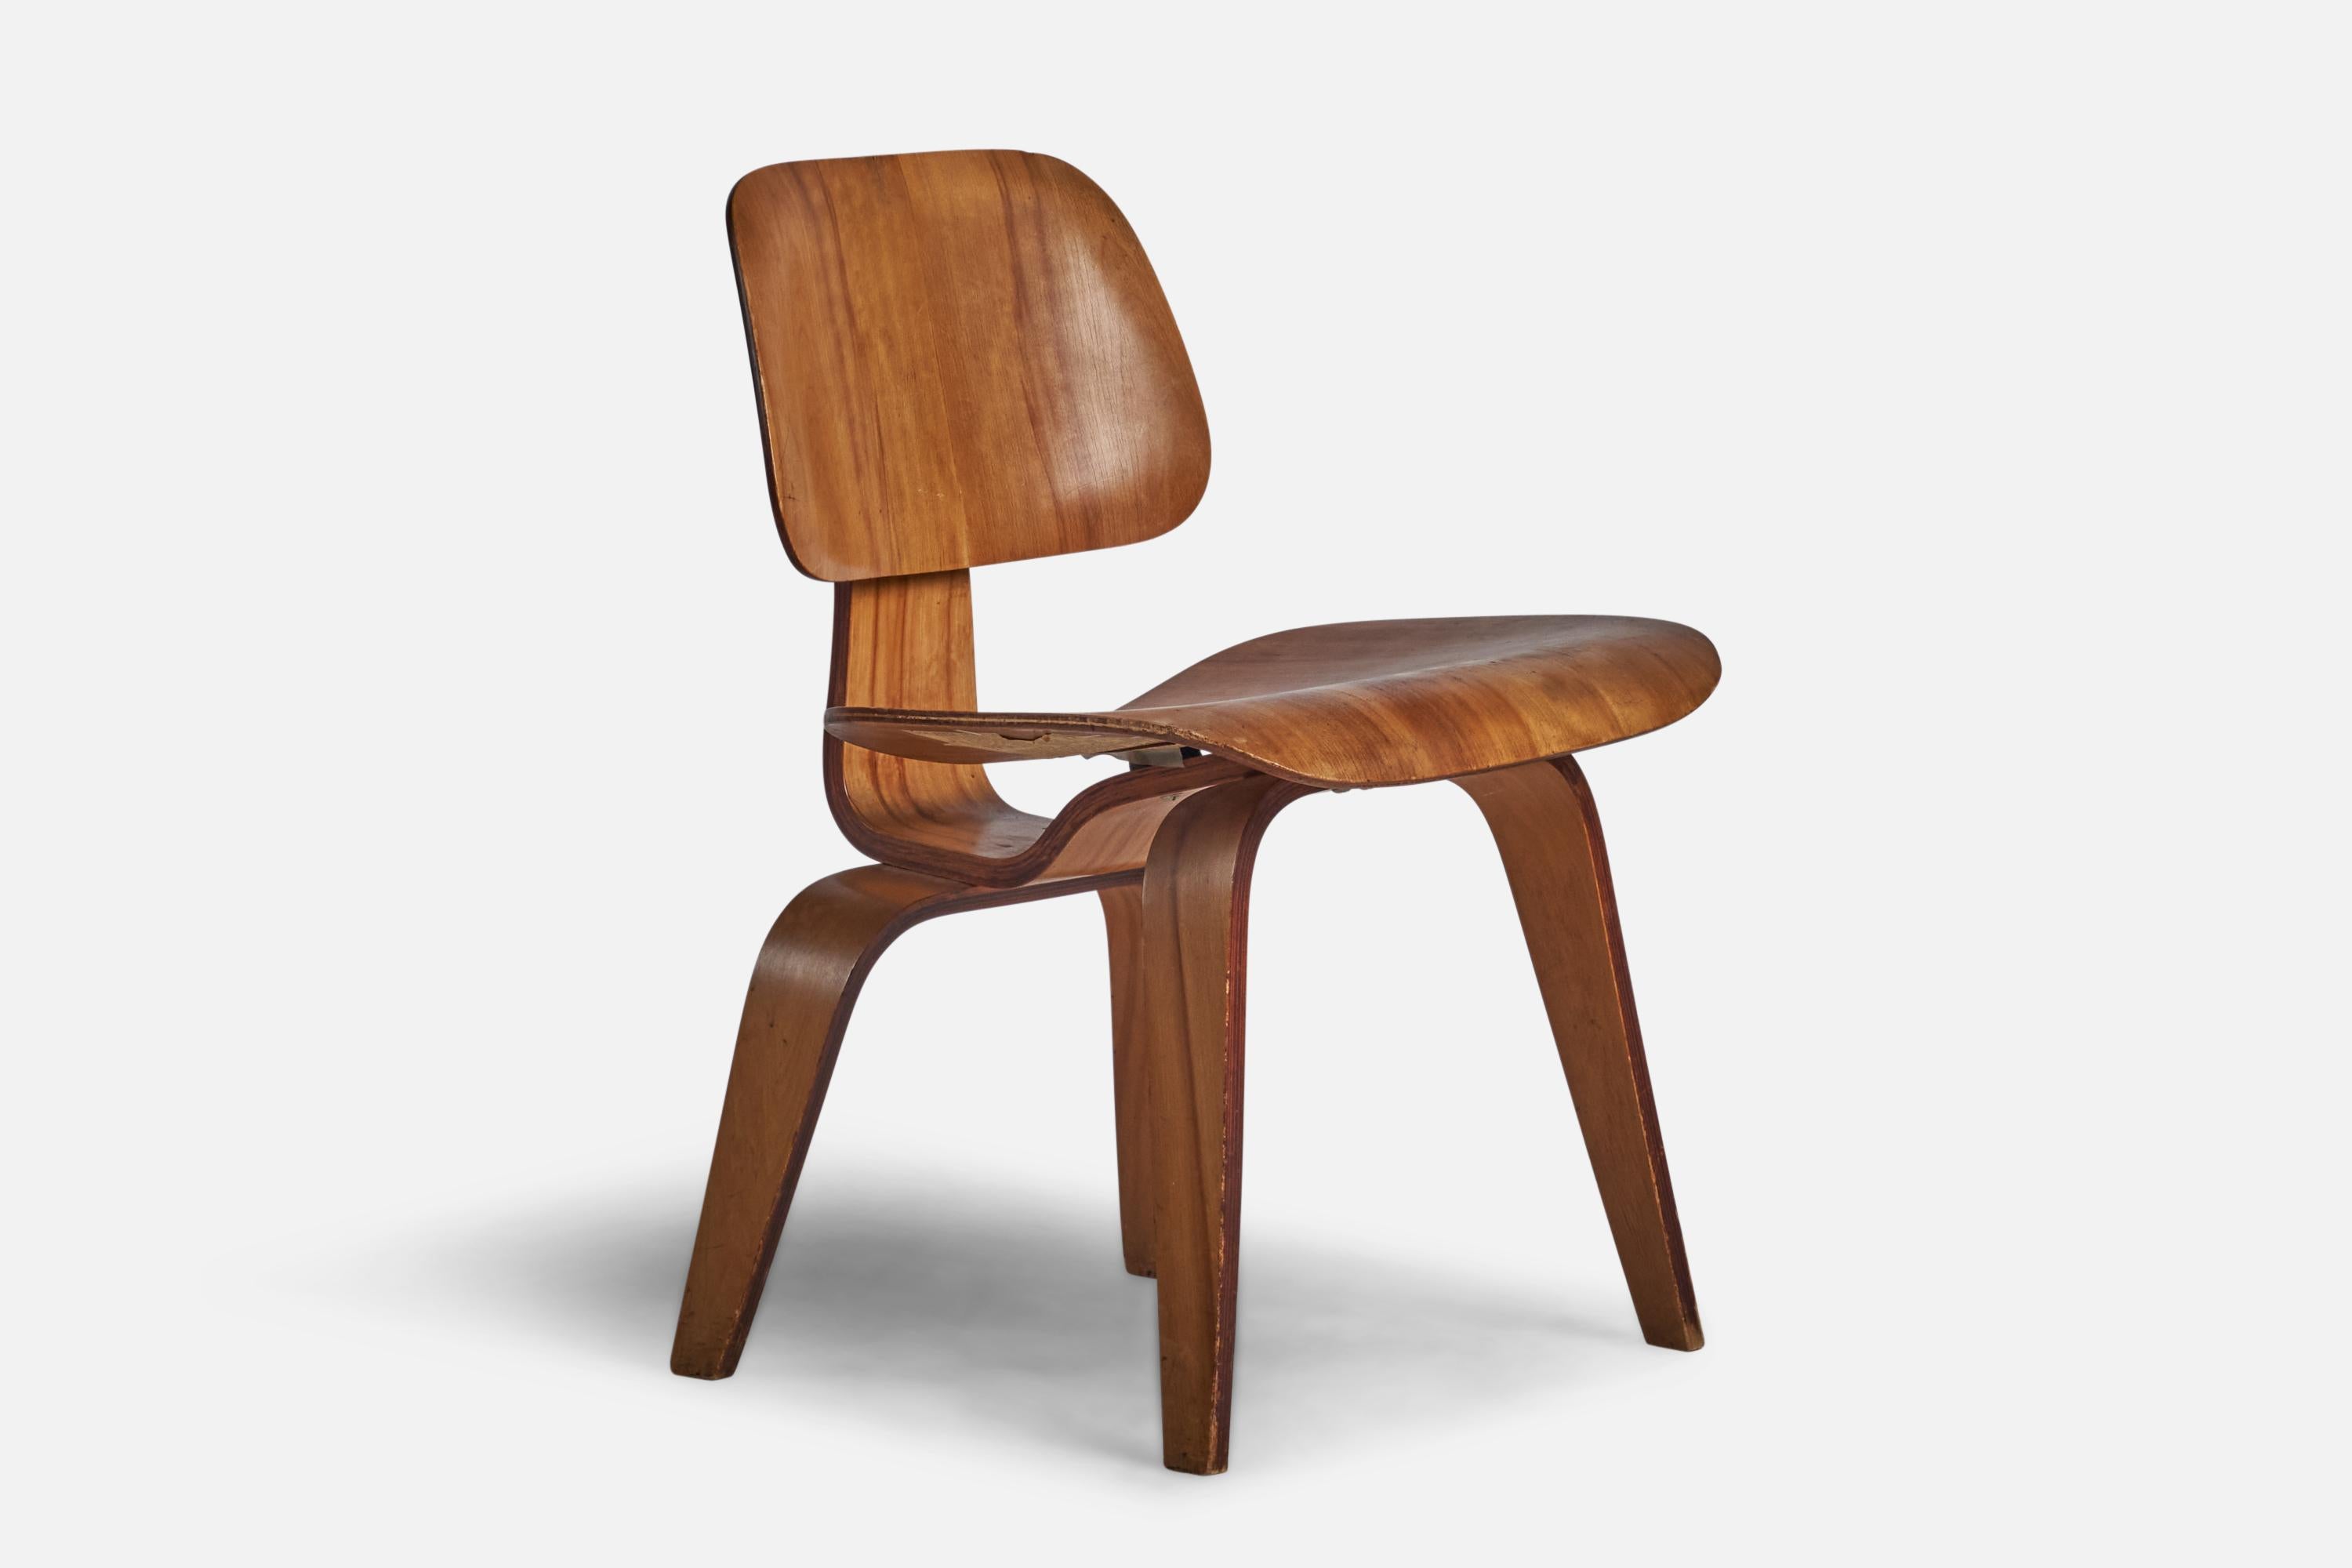 
Chaise de salle à manger ou chaise d'appoint DCW en contreplaqué moulé, conçue par Charles et Ray Eames et produite par Herman Miller, États-Unis, années 1960.
Hauteur d'assise de 16,6 pouces